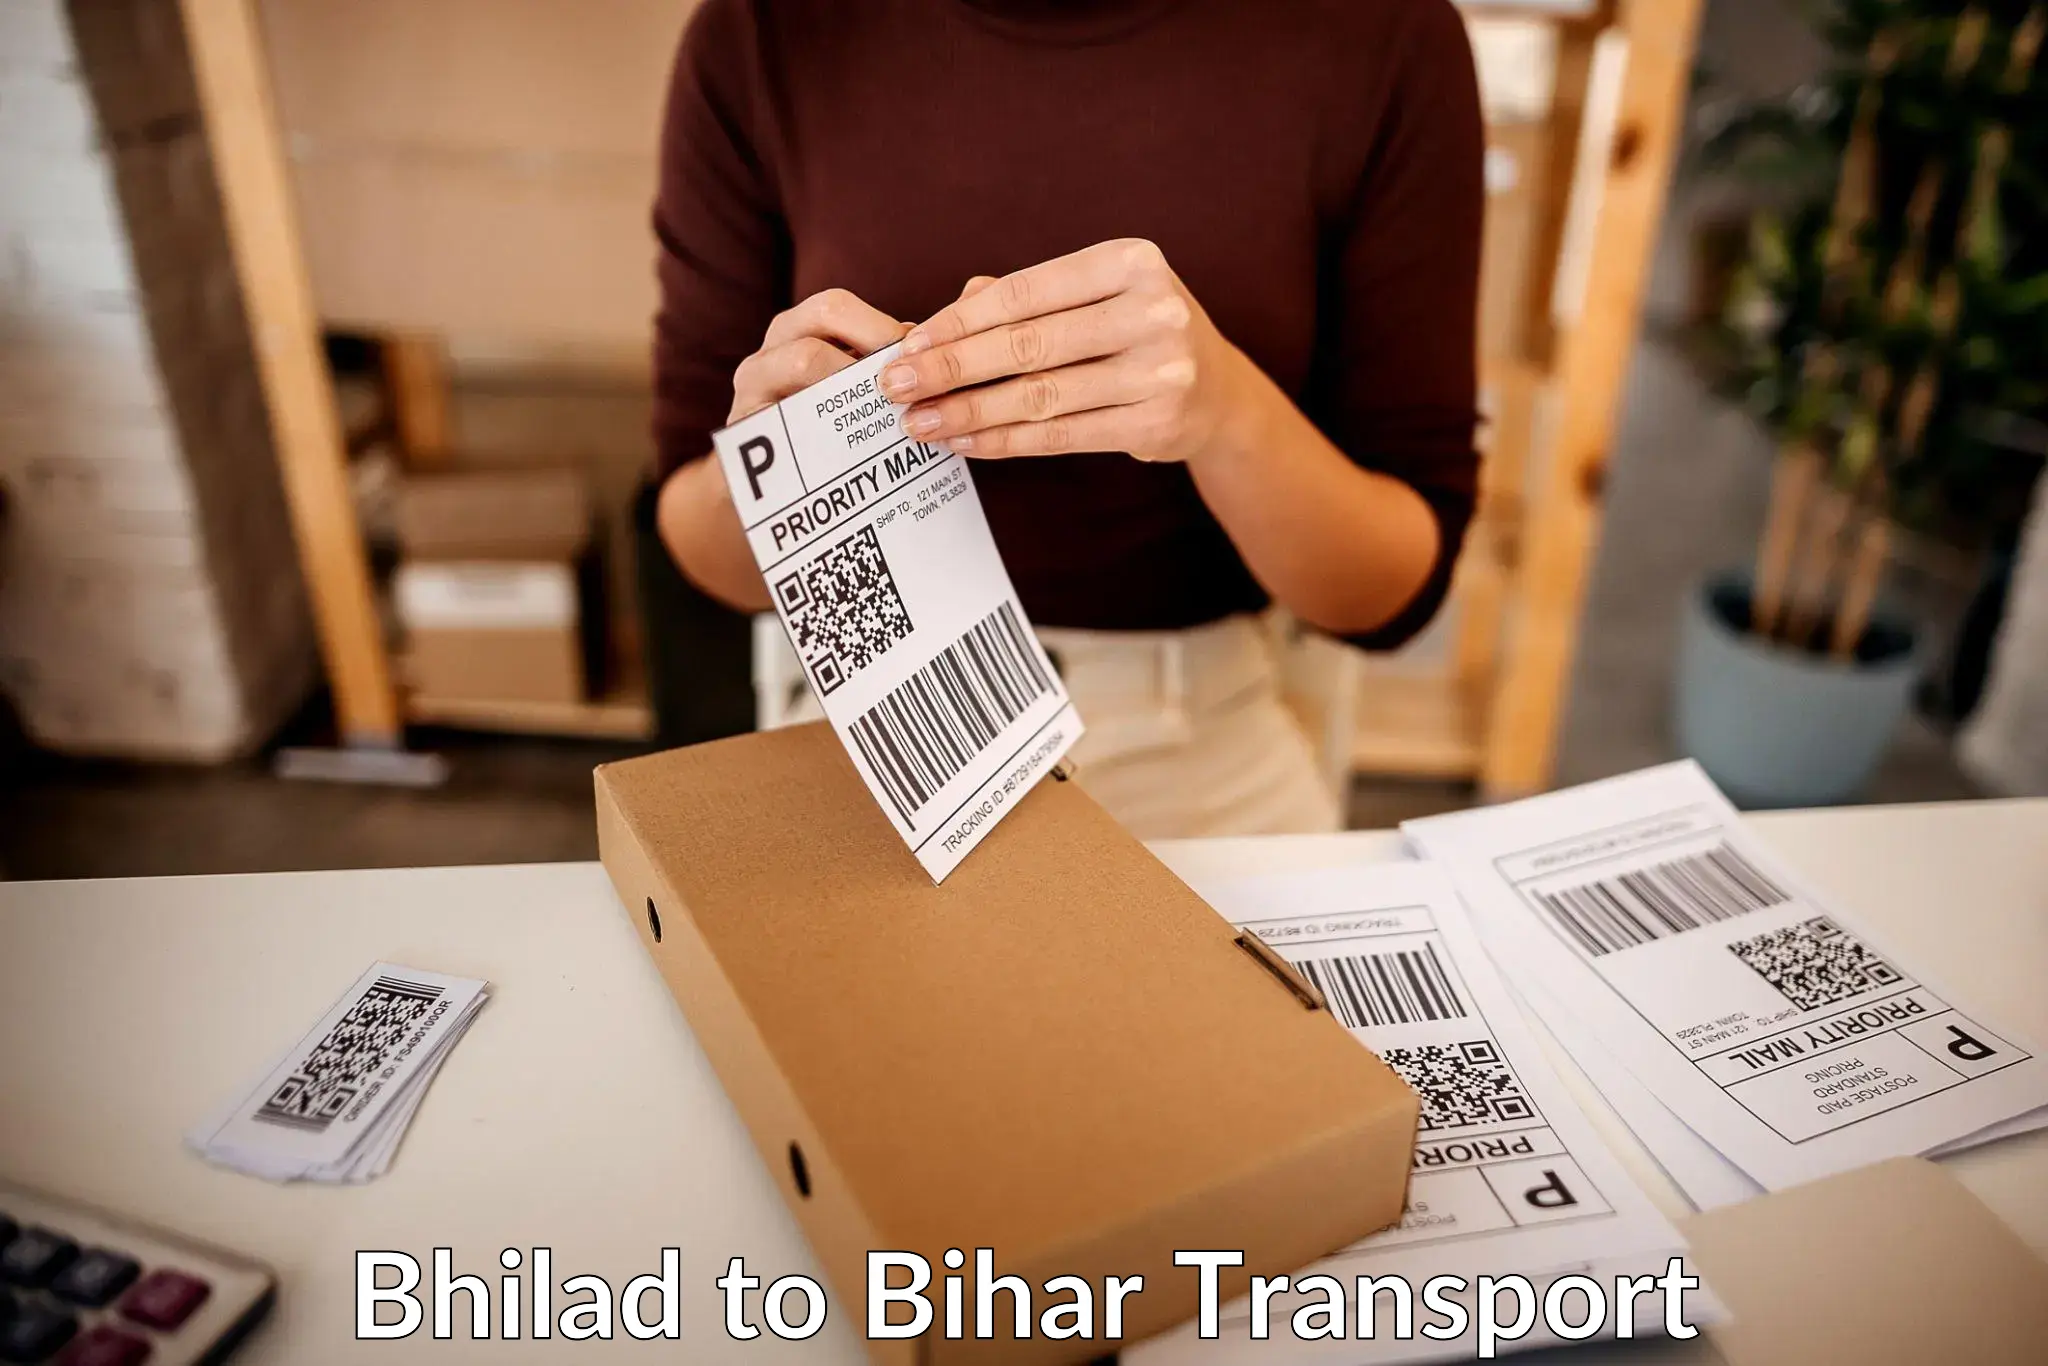 Online transport booking Bhilad to Buxar